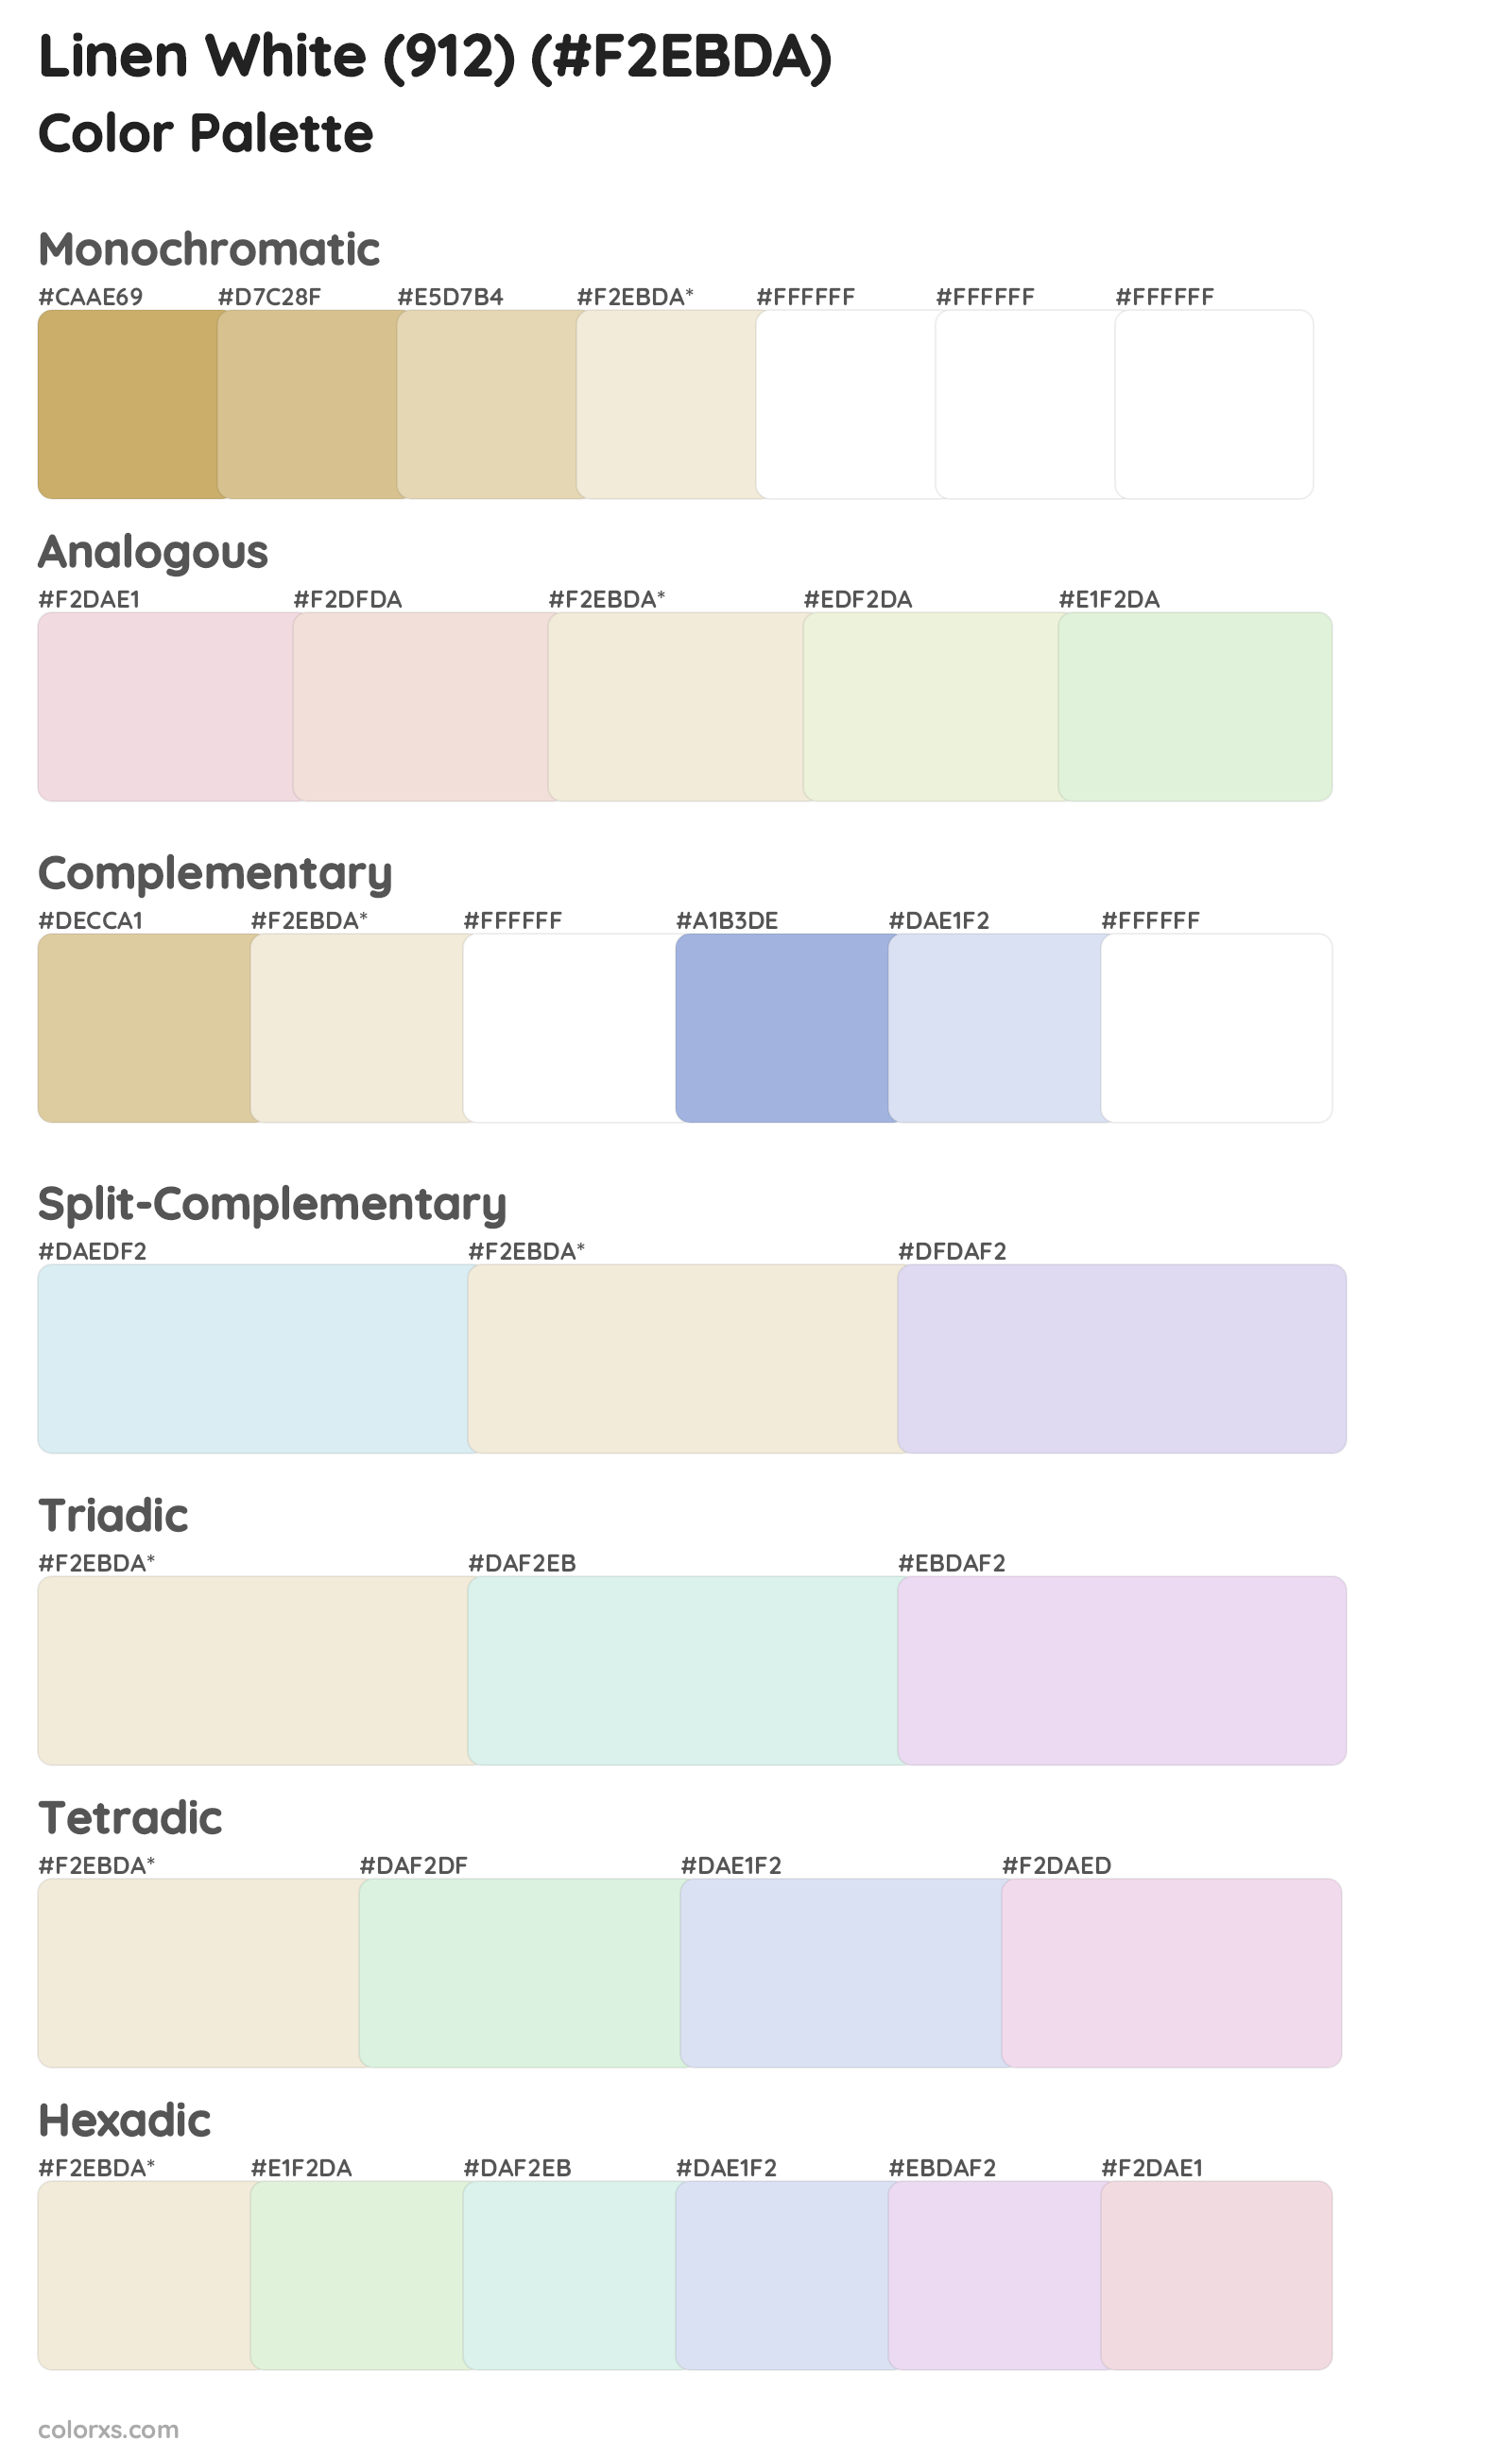 Linen White (912) Color Scheme Palettes